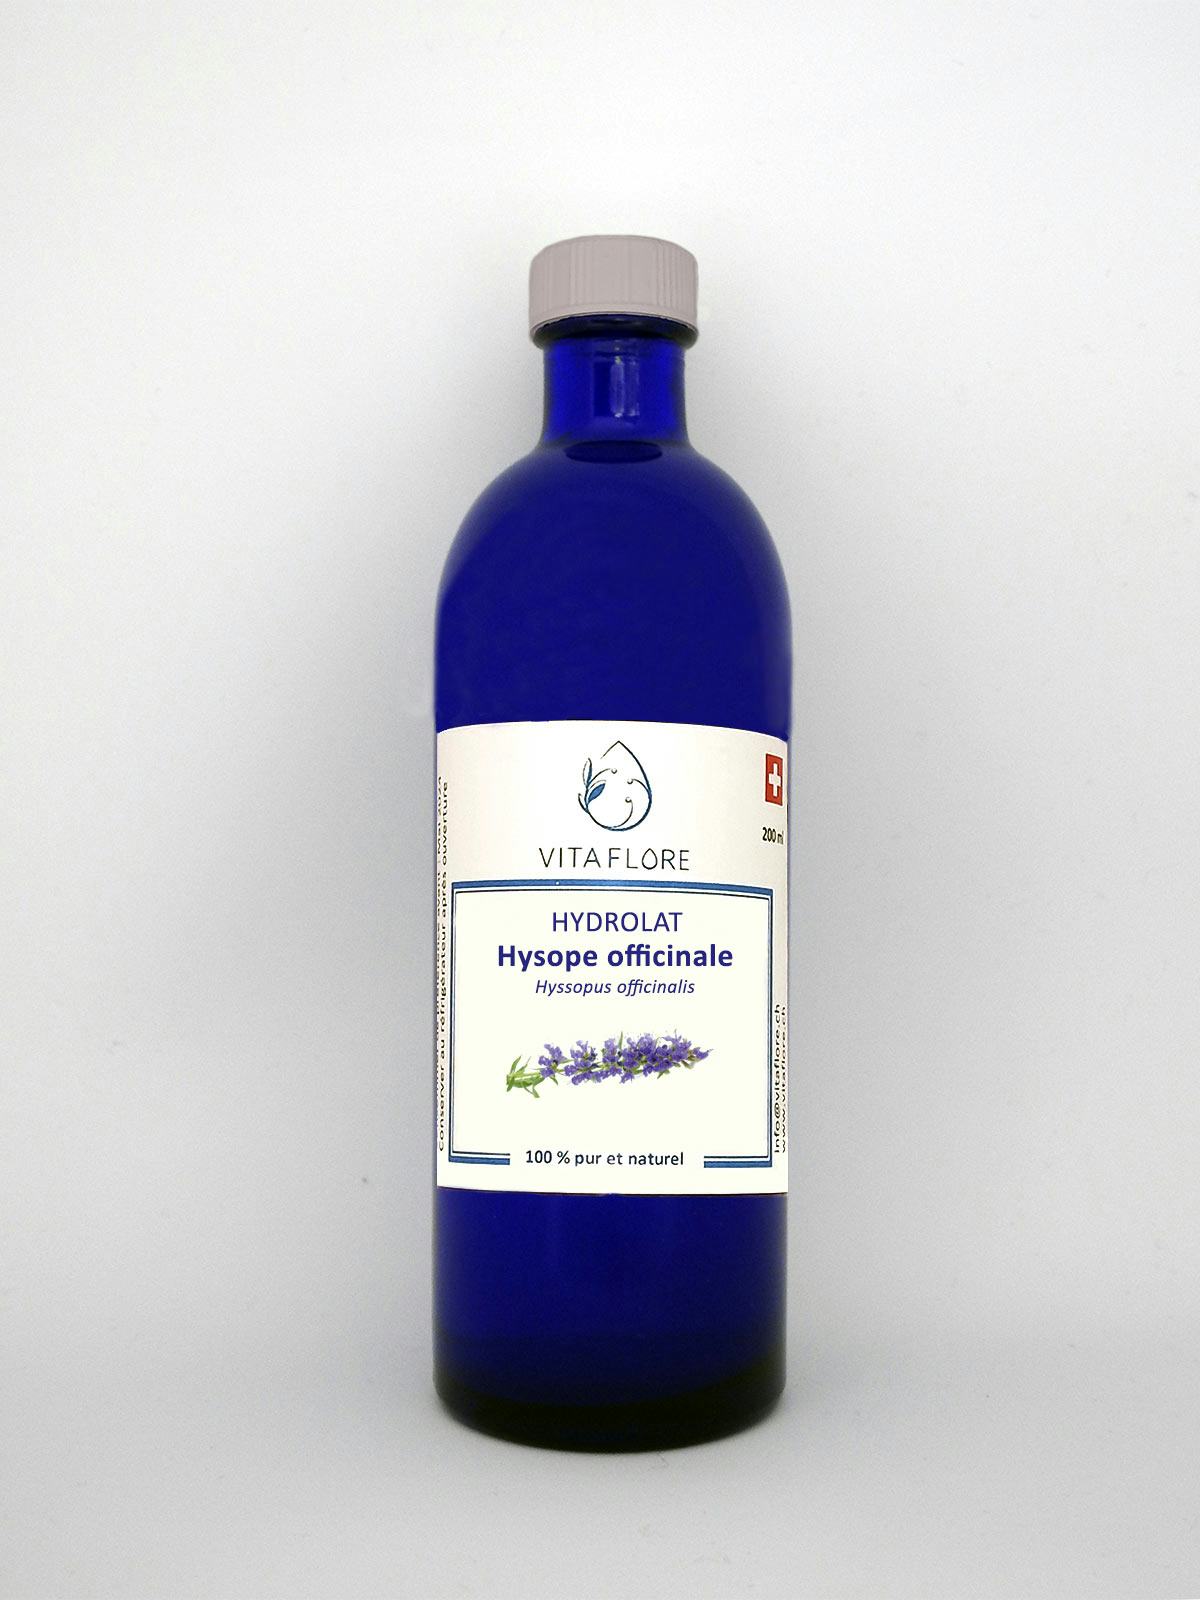 Hydrolat Hysope officinale, prodotto artigianale per la vendita diretta in Svizzera